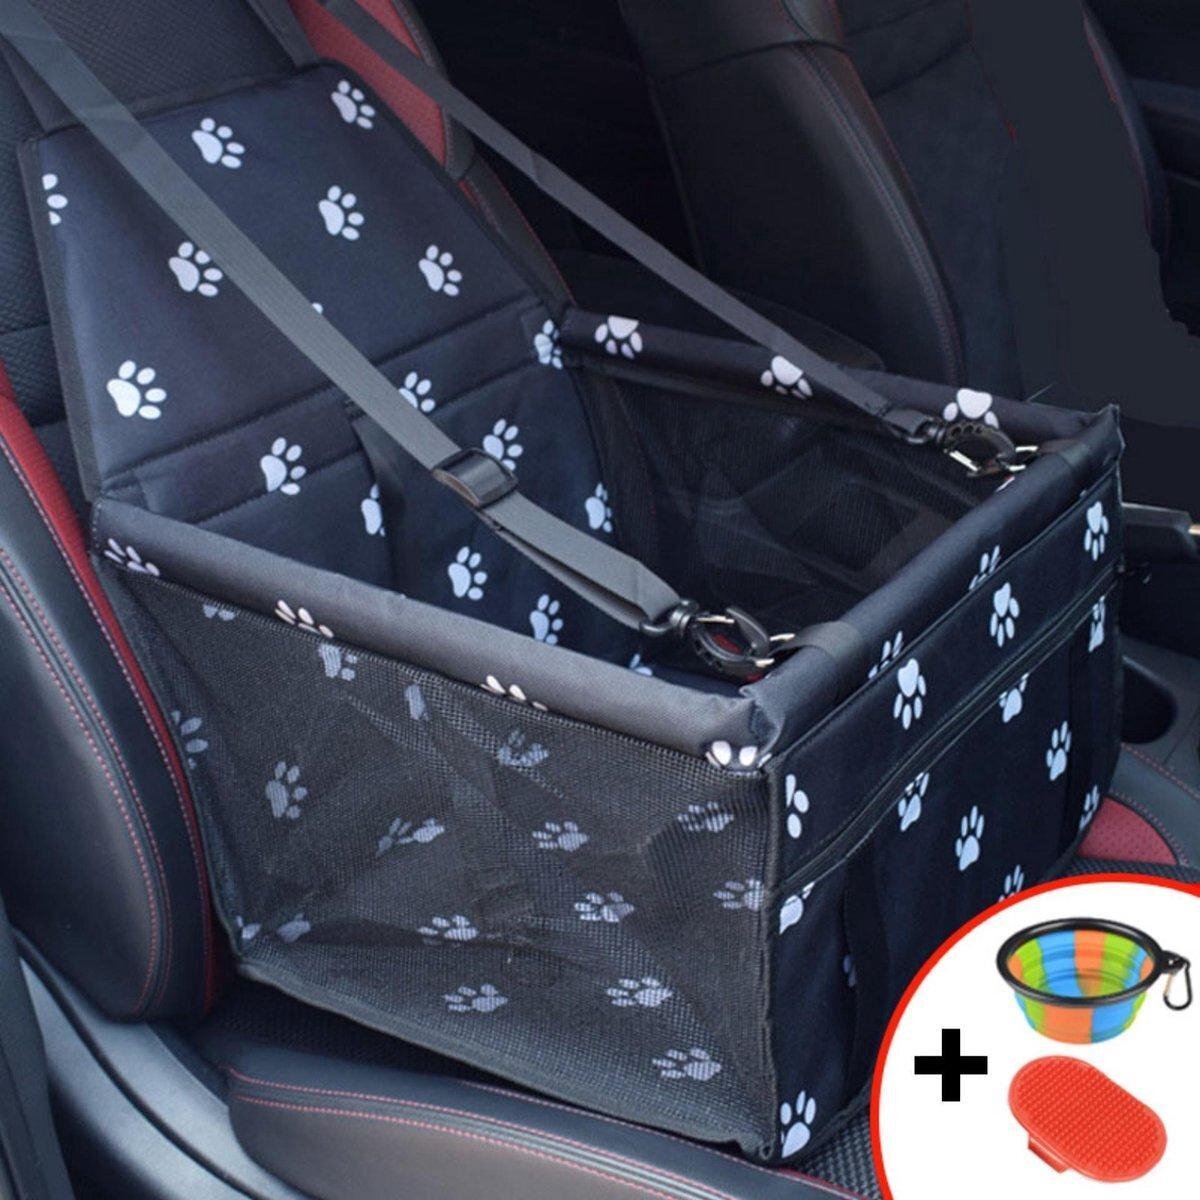 Ariko Autostoel hond / kat / puppy - opvouwbaar waterbestendig honden / kat zitje - Dieren zitje voor in de auto - Hondenmand - 40 x 40 x 25 cm - Incl opvouwbaar voerbakje en borstel - Veiligheidsband - Schone auto zwart